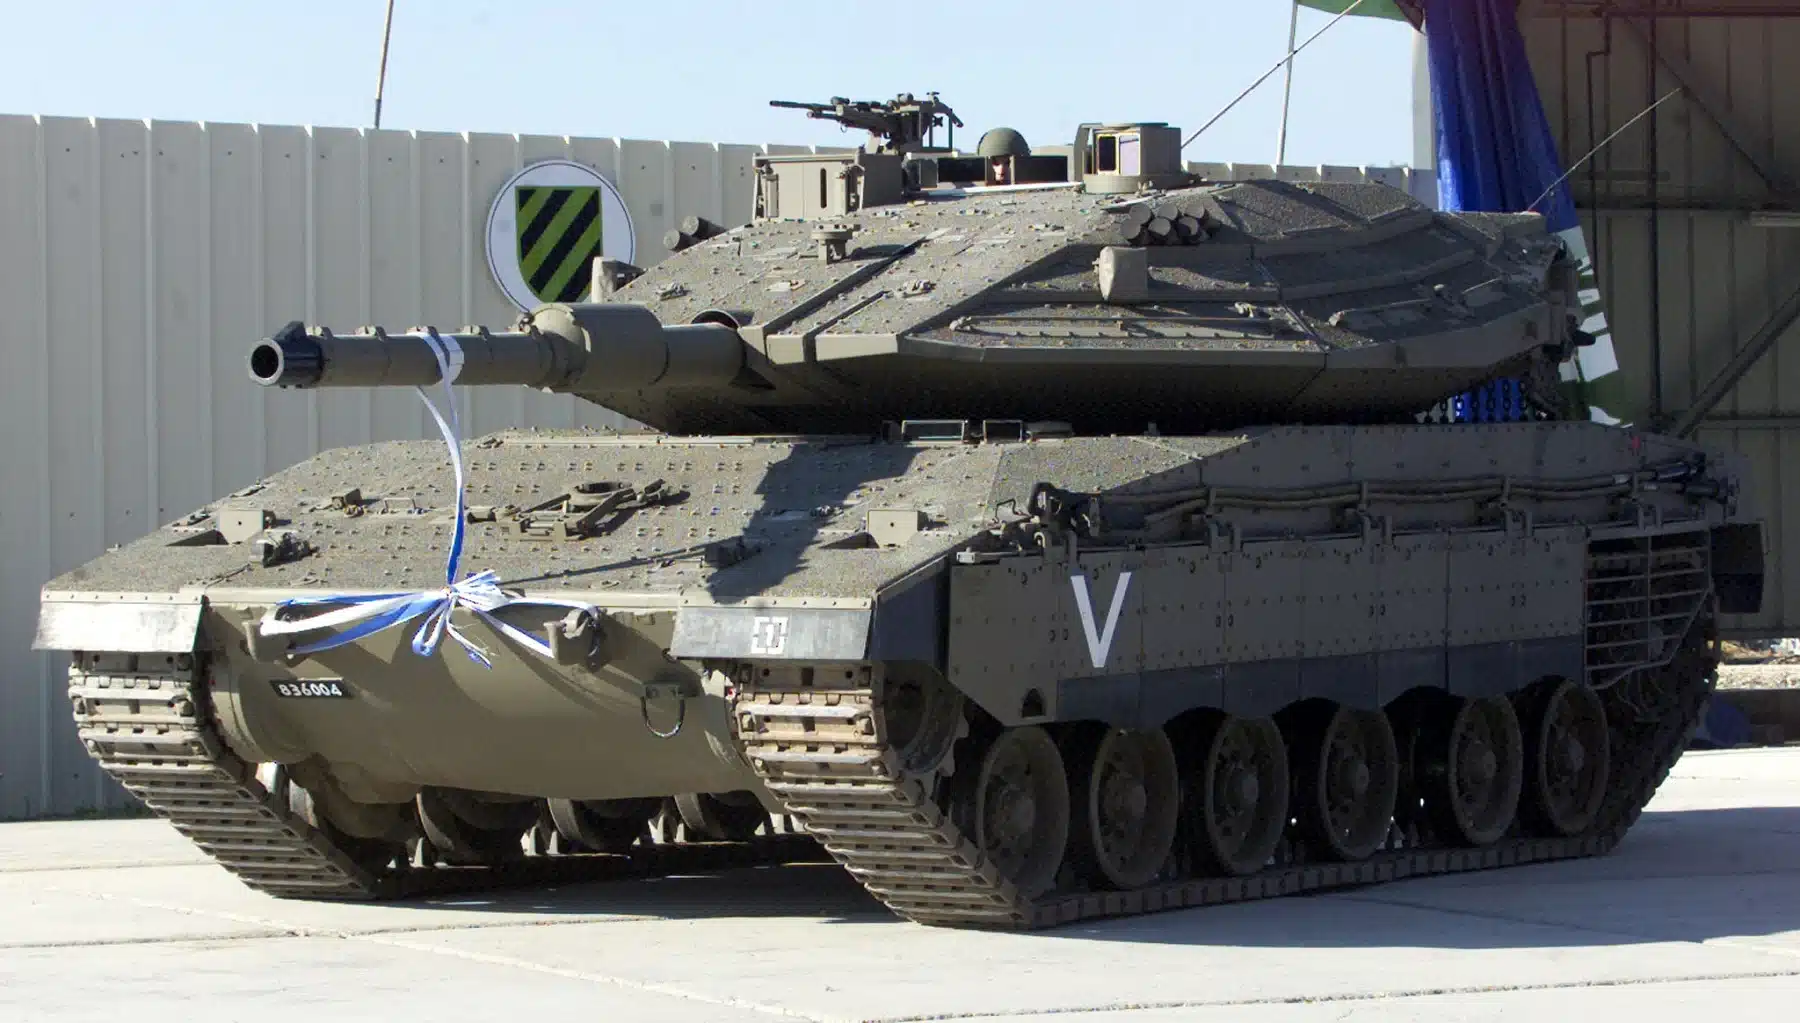 دبابة BARAK Merkava V تدخل الخدمة مع الجيش الإسرائيلي..تعرف مميزاتها